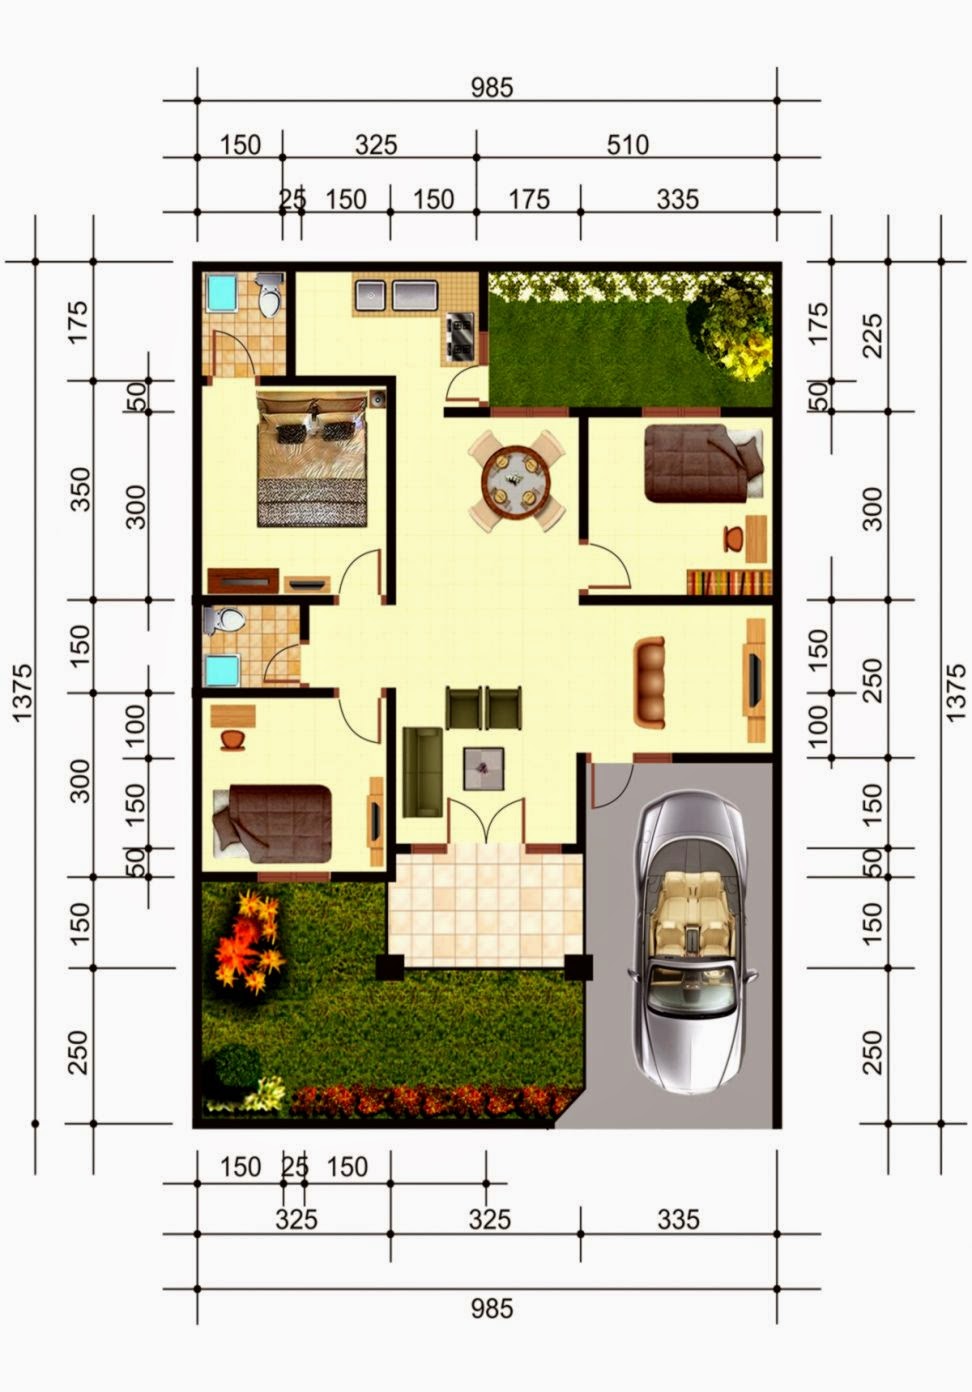 101 Denah Rumah Minimalis Jepang Gambar Desain Rumah Minimalis